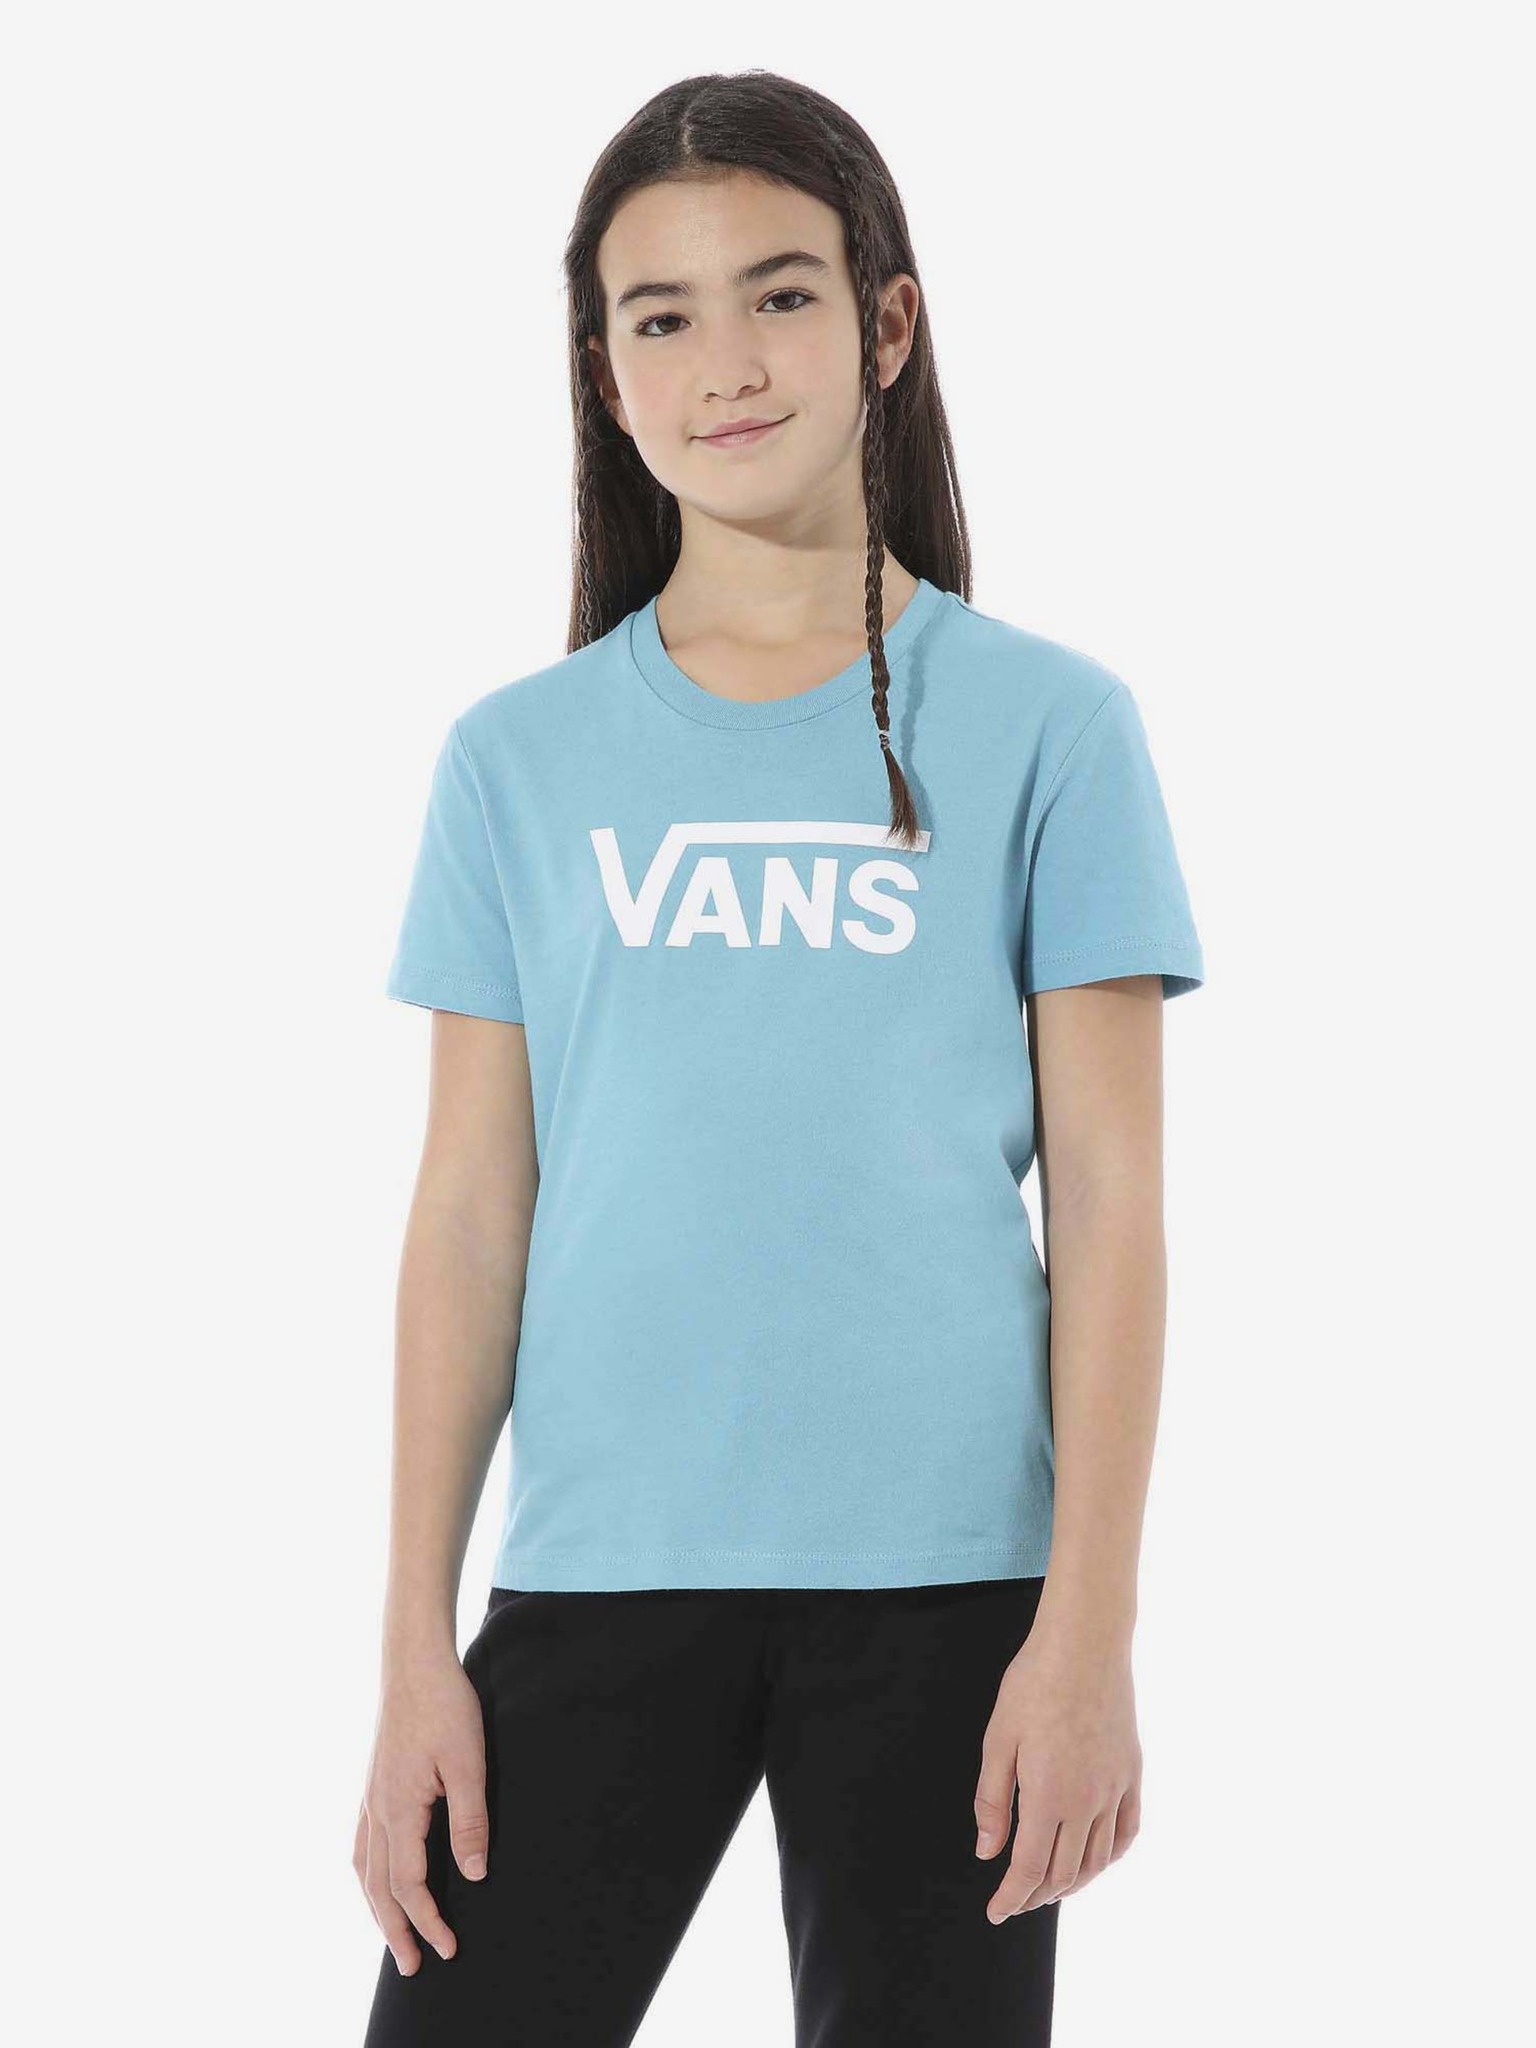 Vans - Flying V Kids T-shirt